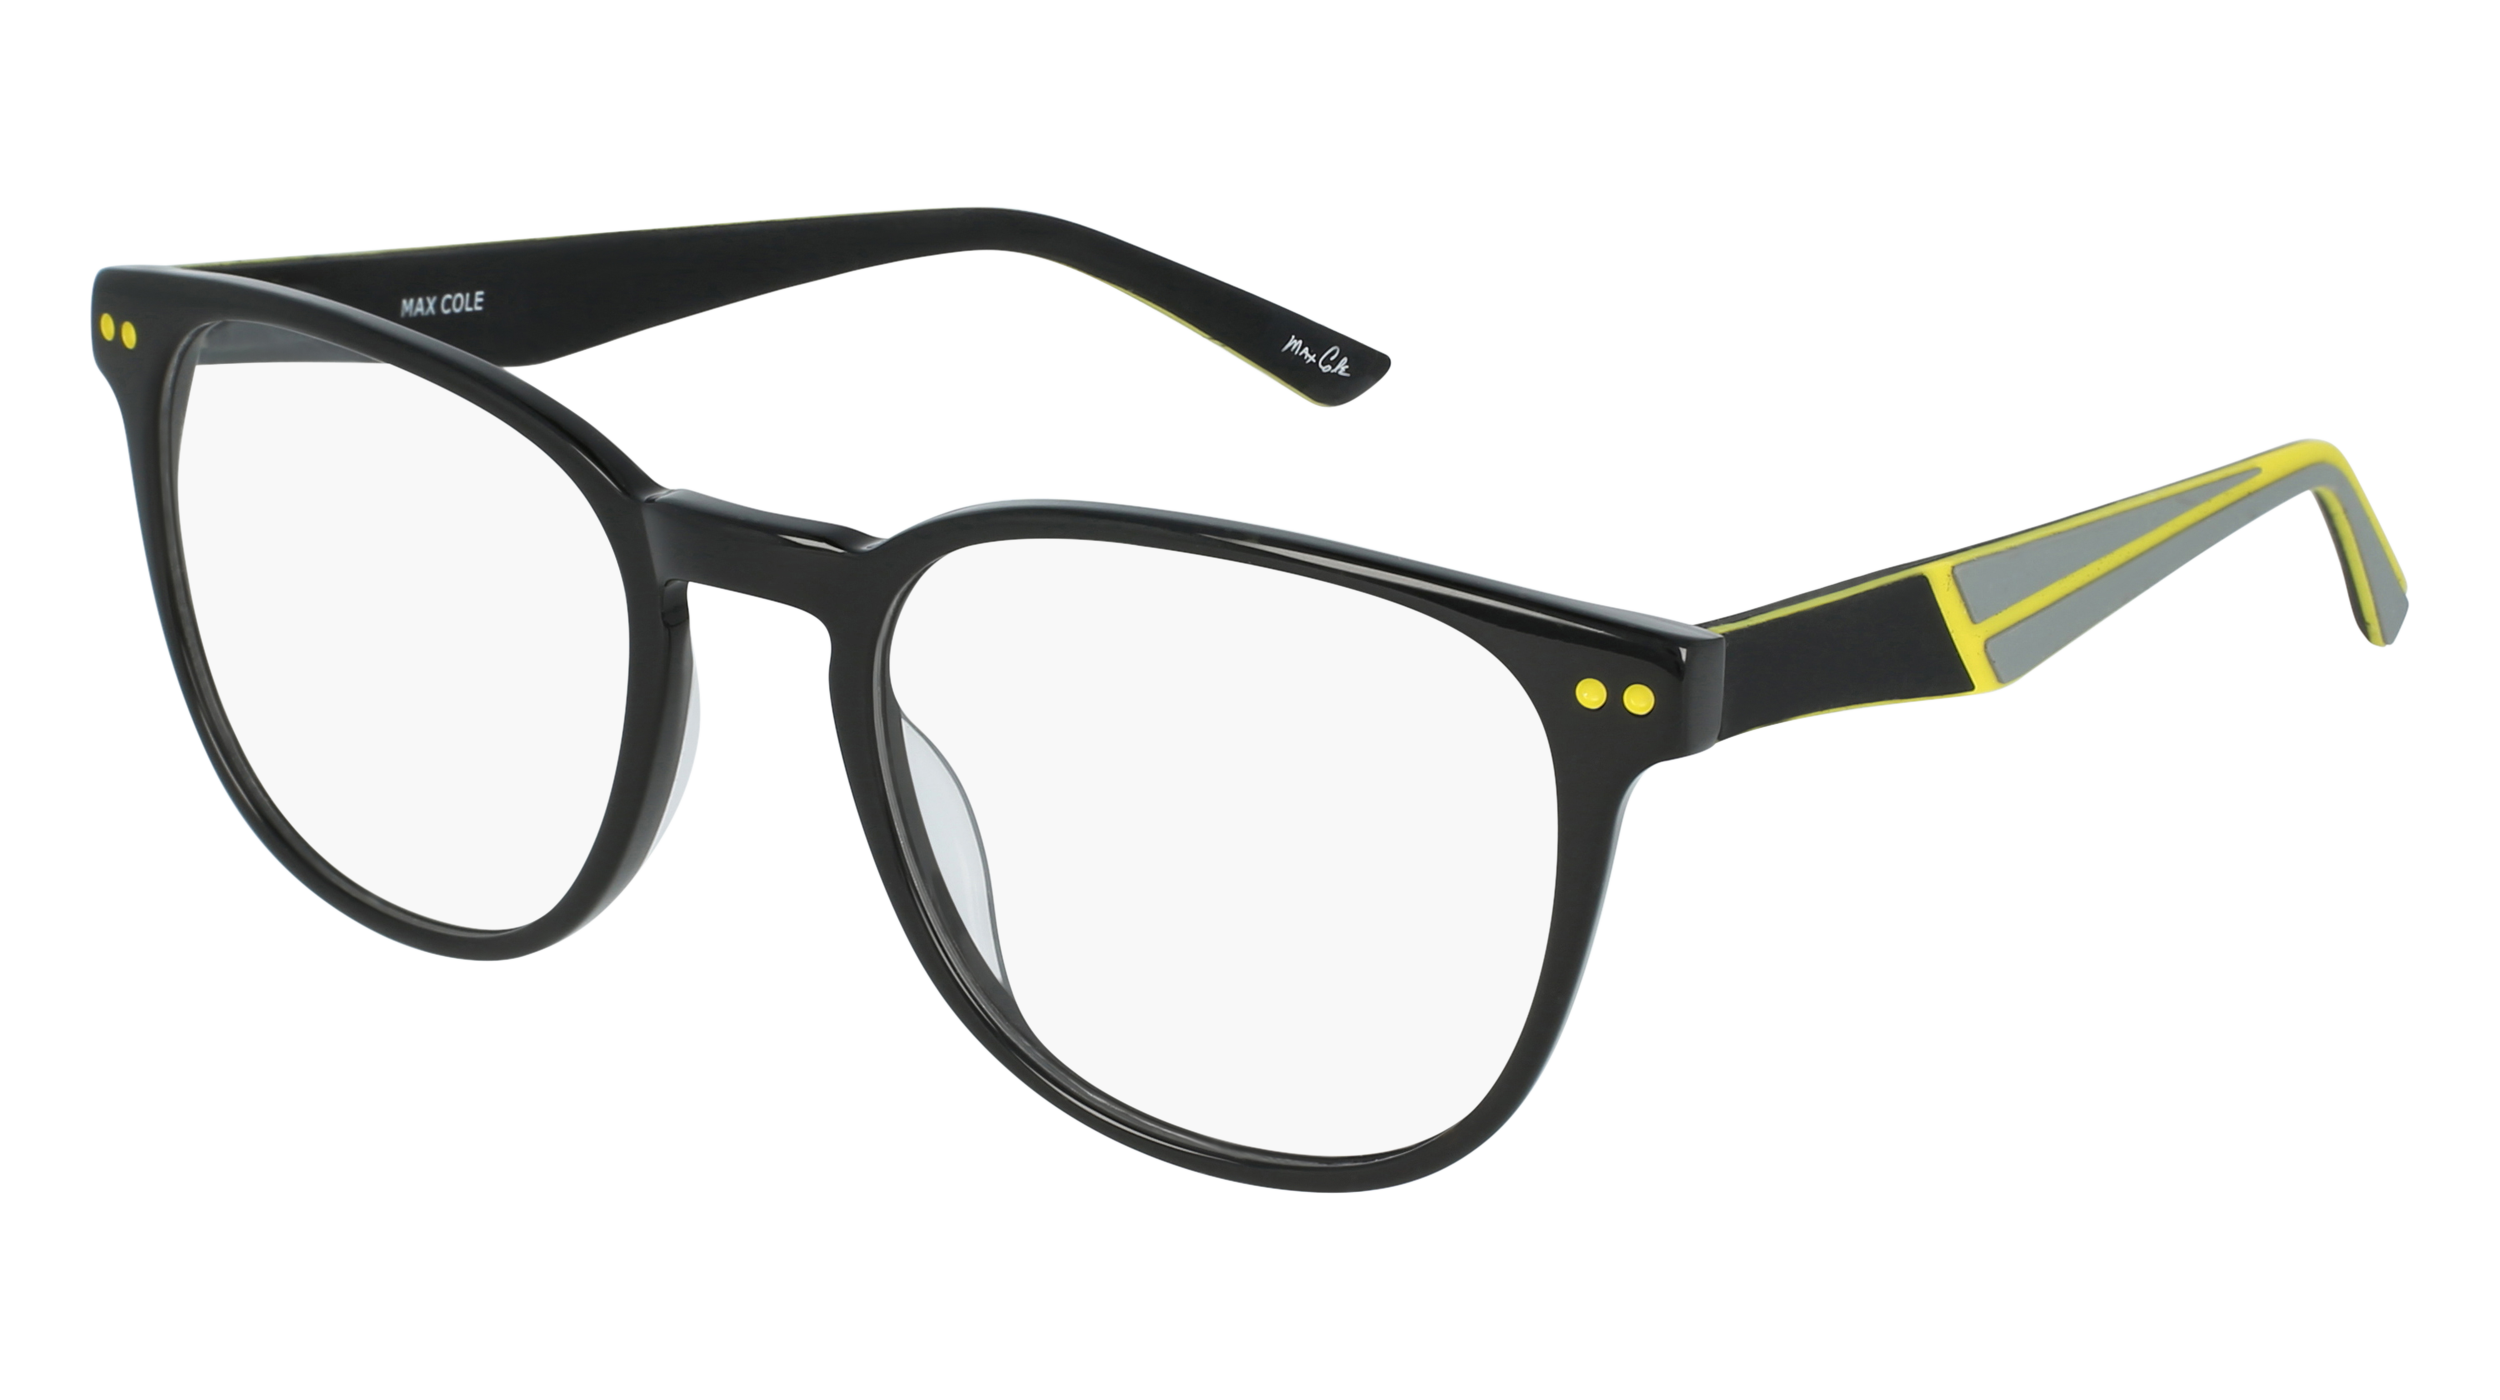 M MC 1499 men's eyeglasses (from the side)